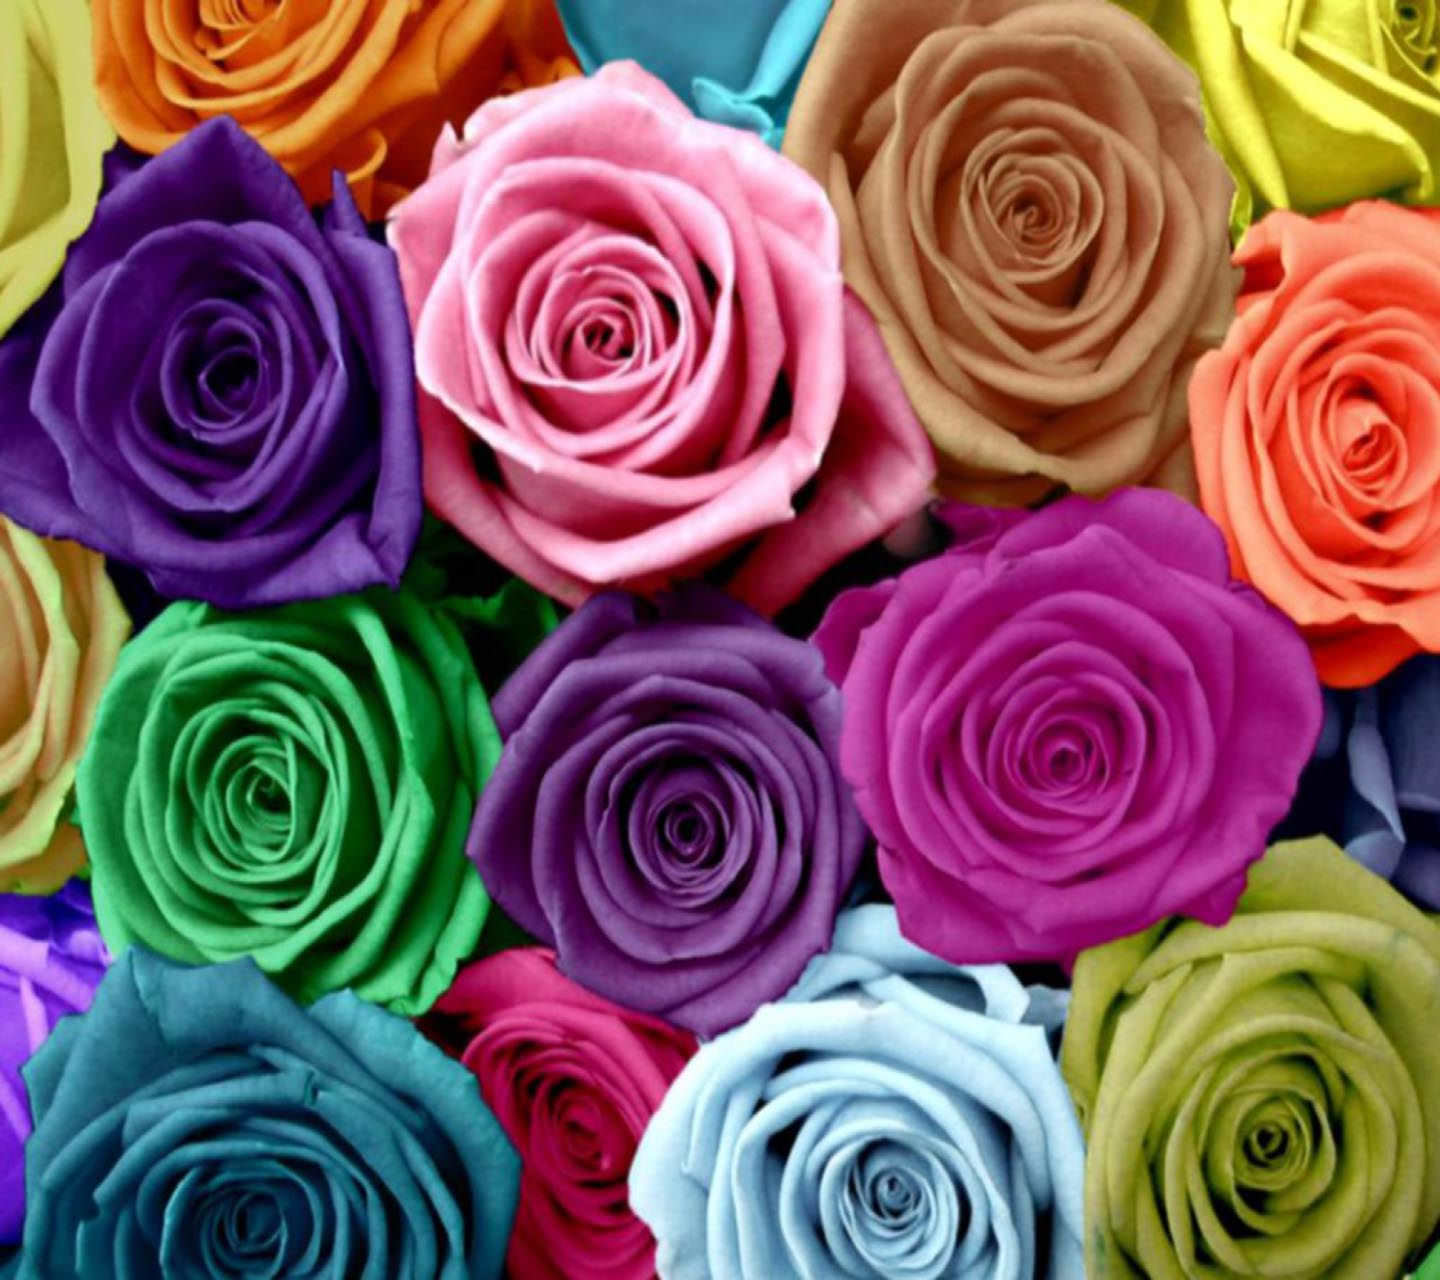 colourful roses wallpaper,flower,rose,garden roses,rose family,plant